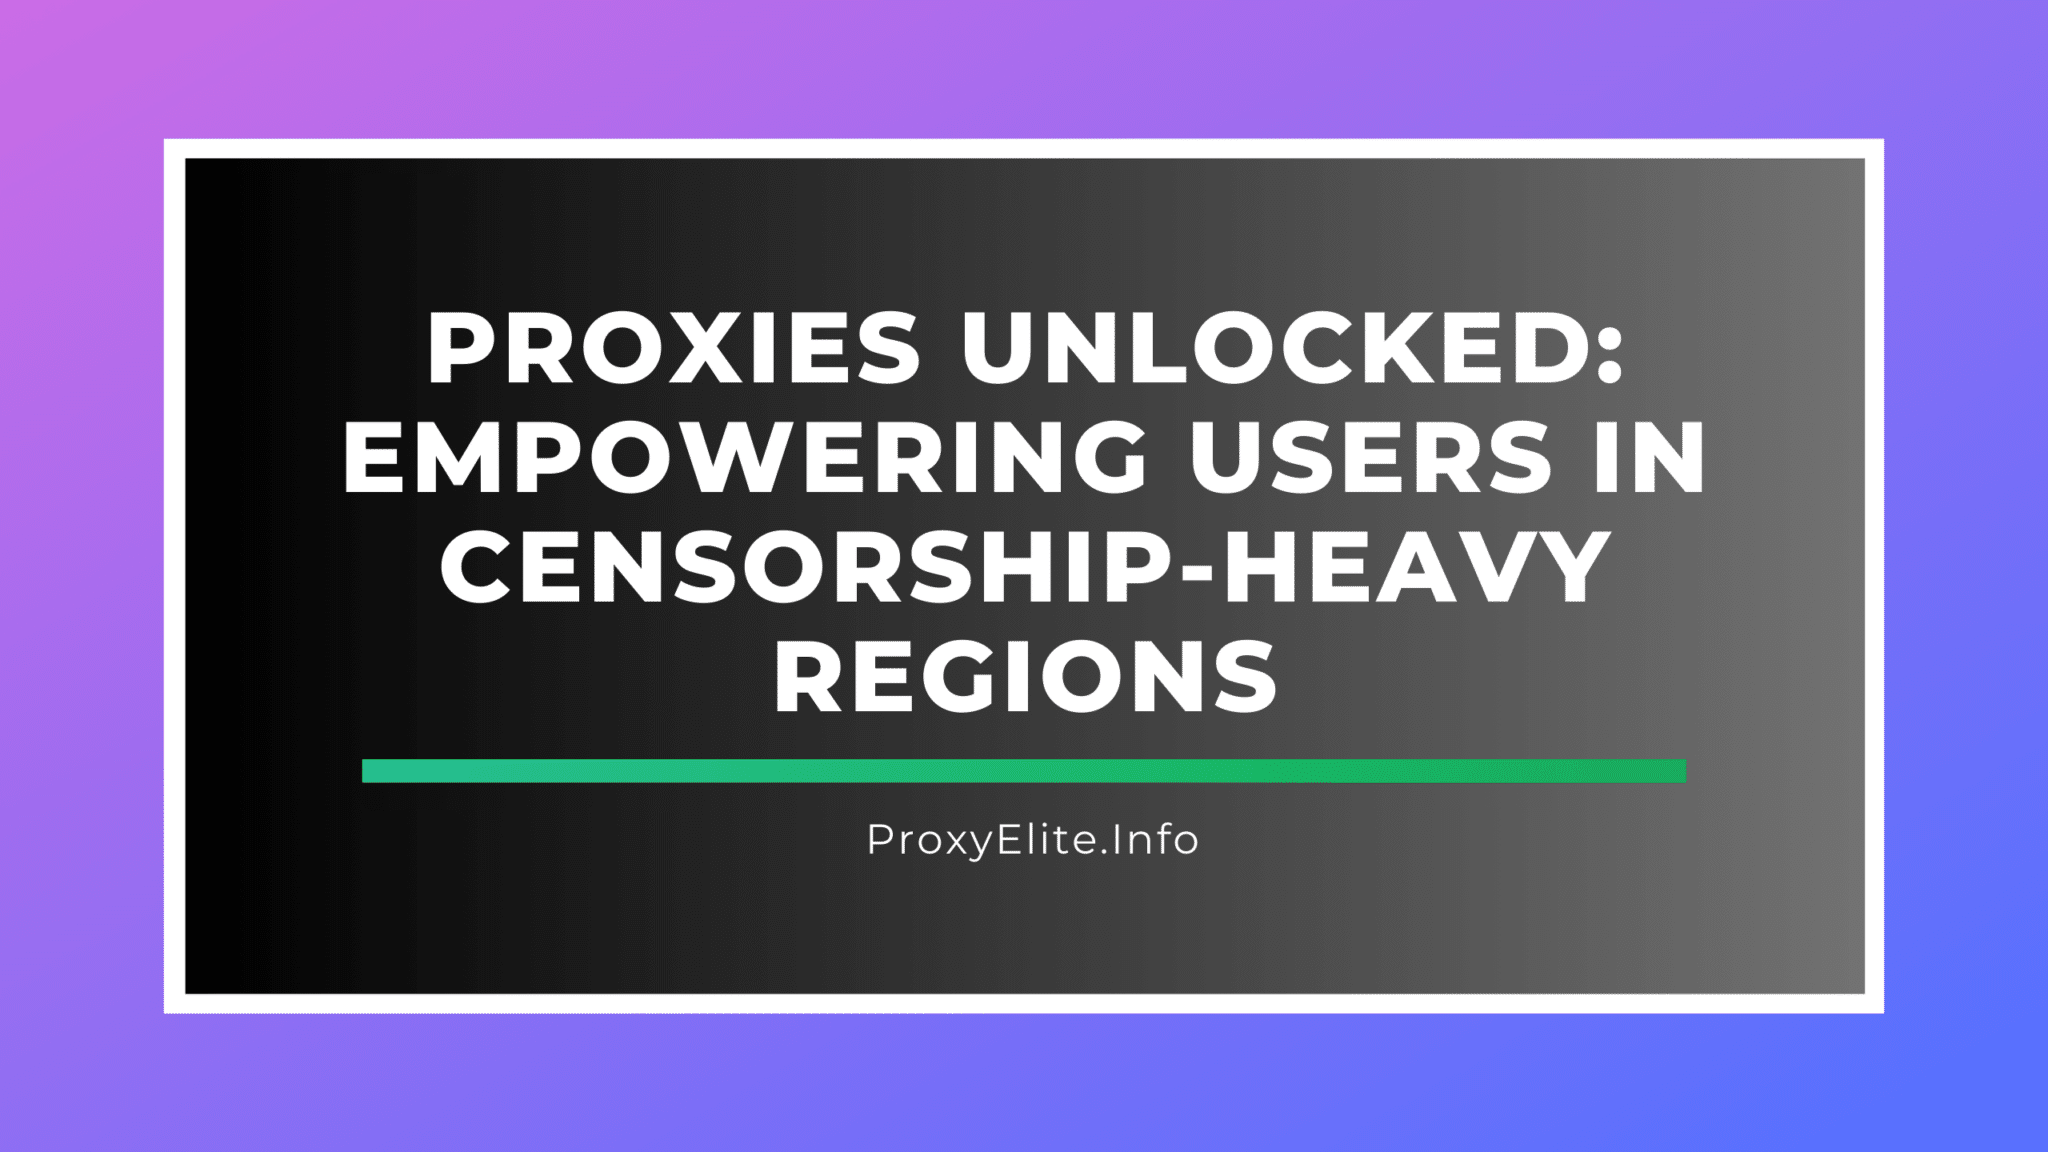 Проксі-сервери розблоковано: розширення можливостей користувачів у регіонах із жорсткою цензурою